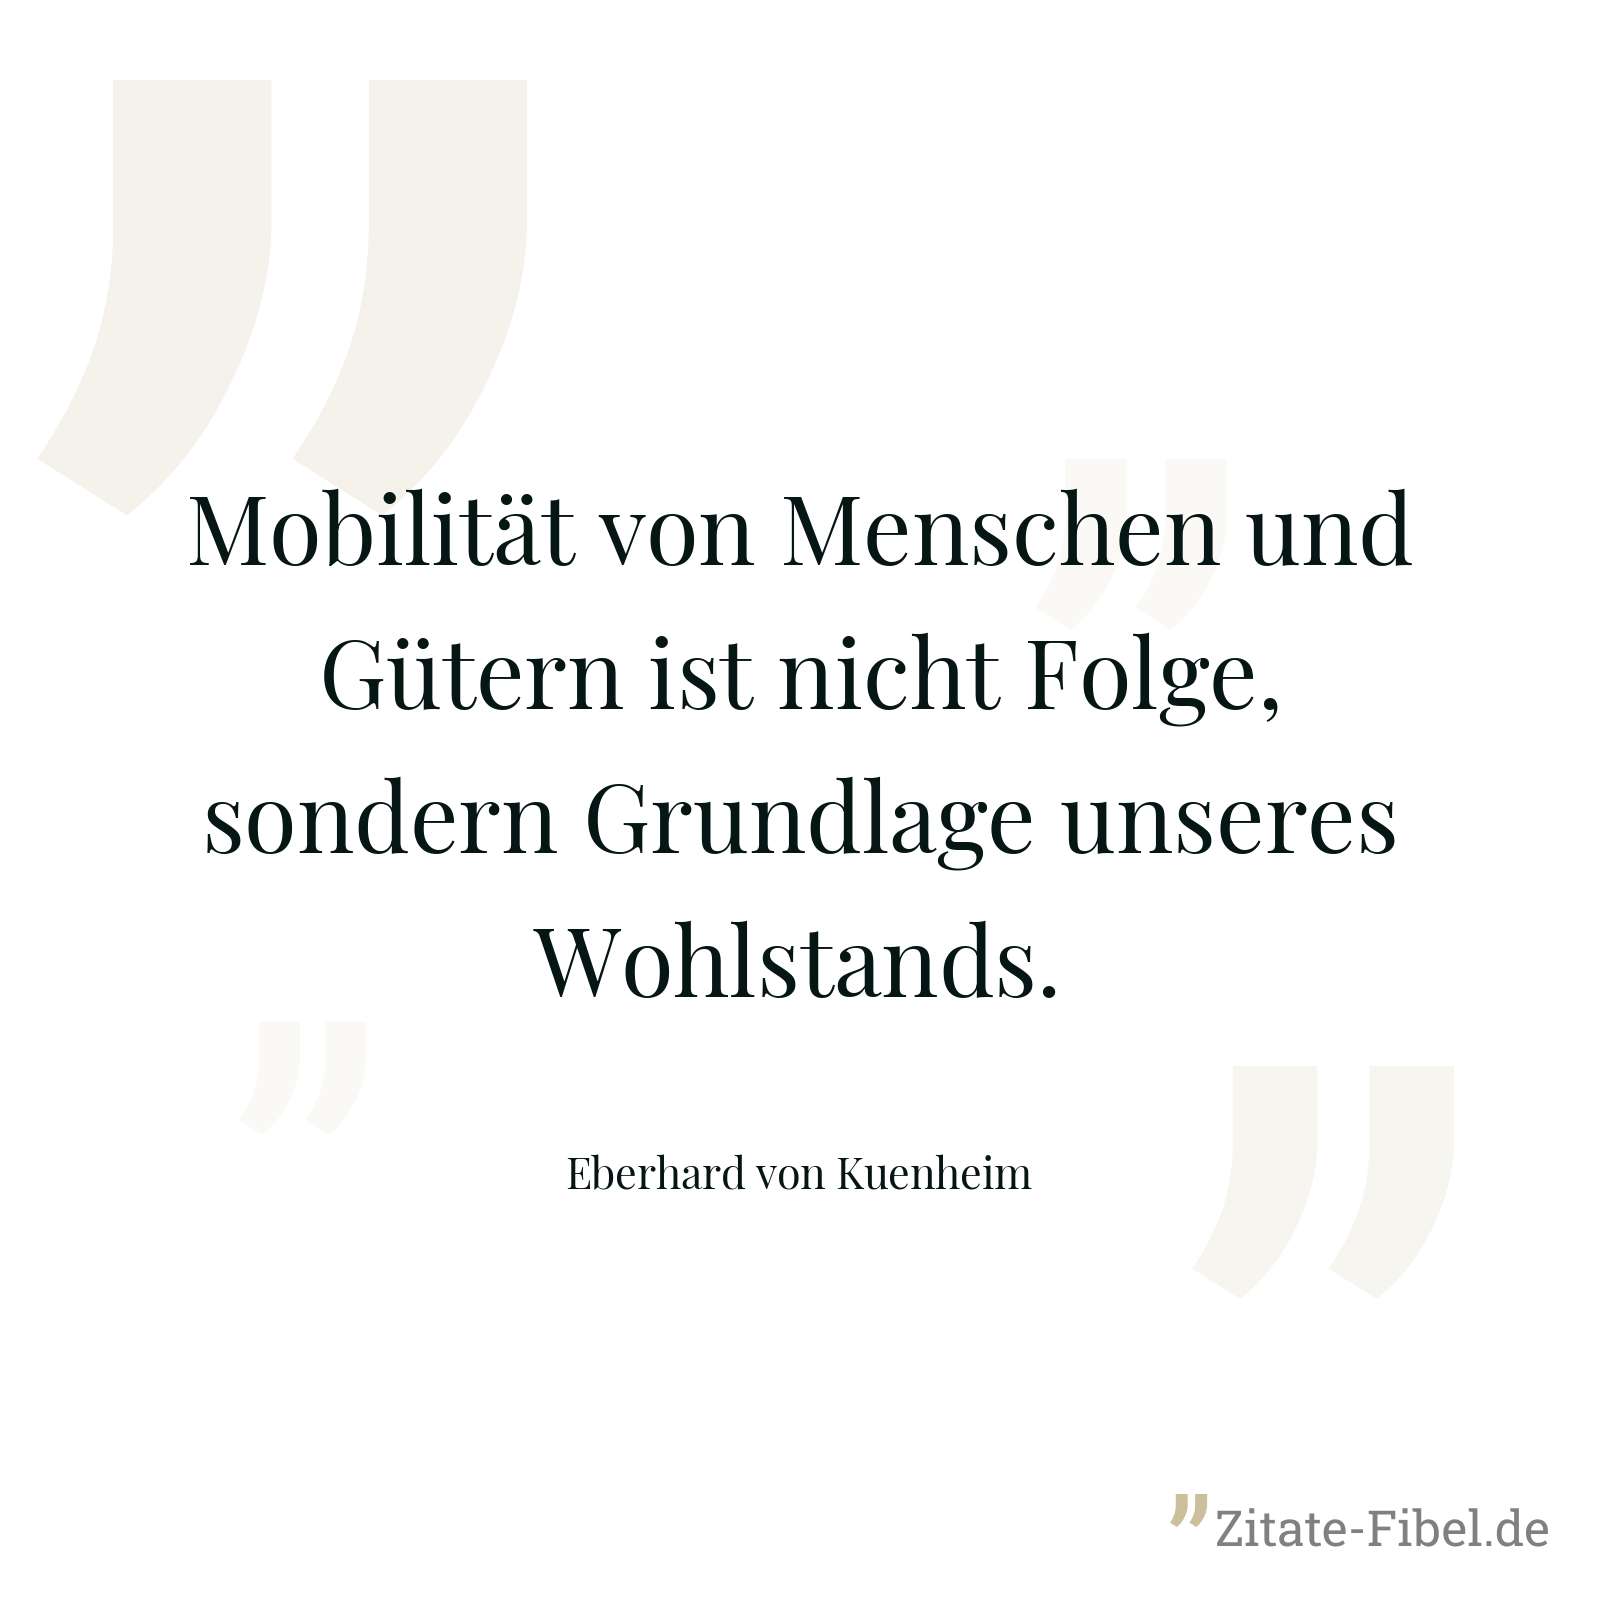 Mobilität von Menschen und Gütern ist nicht Folge, sondern Grundlage unseres Wohlstands. - Eberhard von Kuenheim